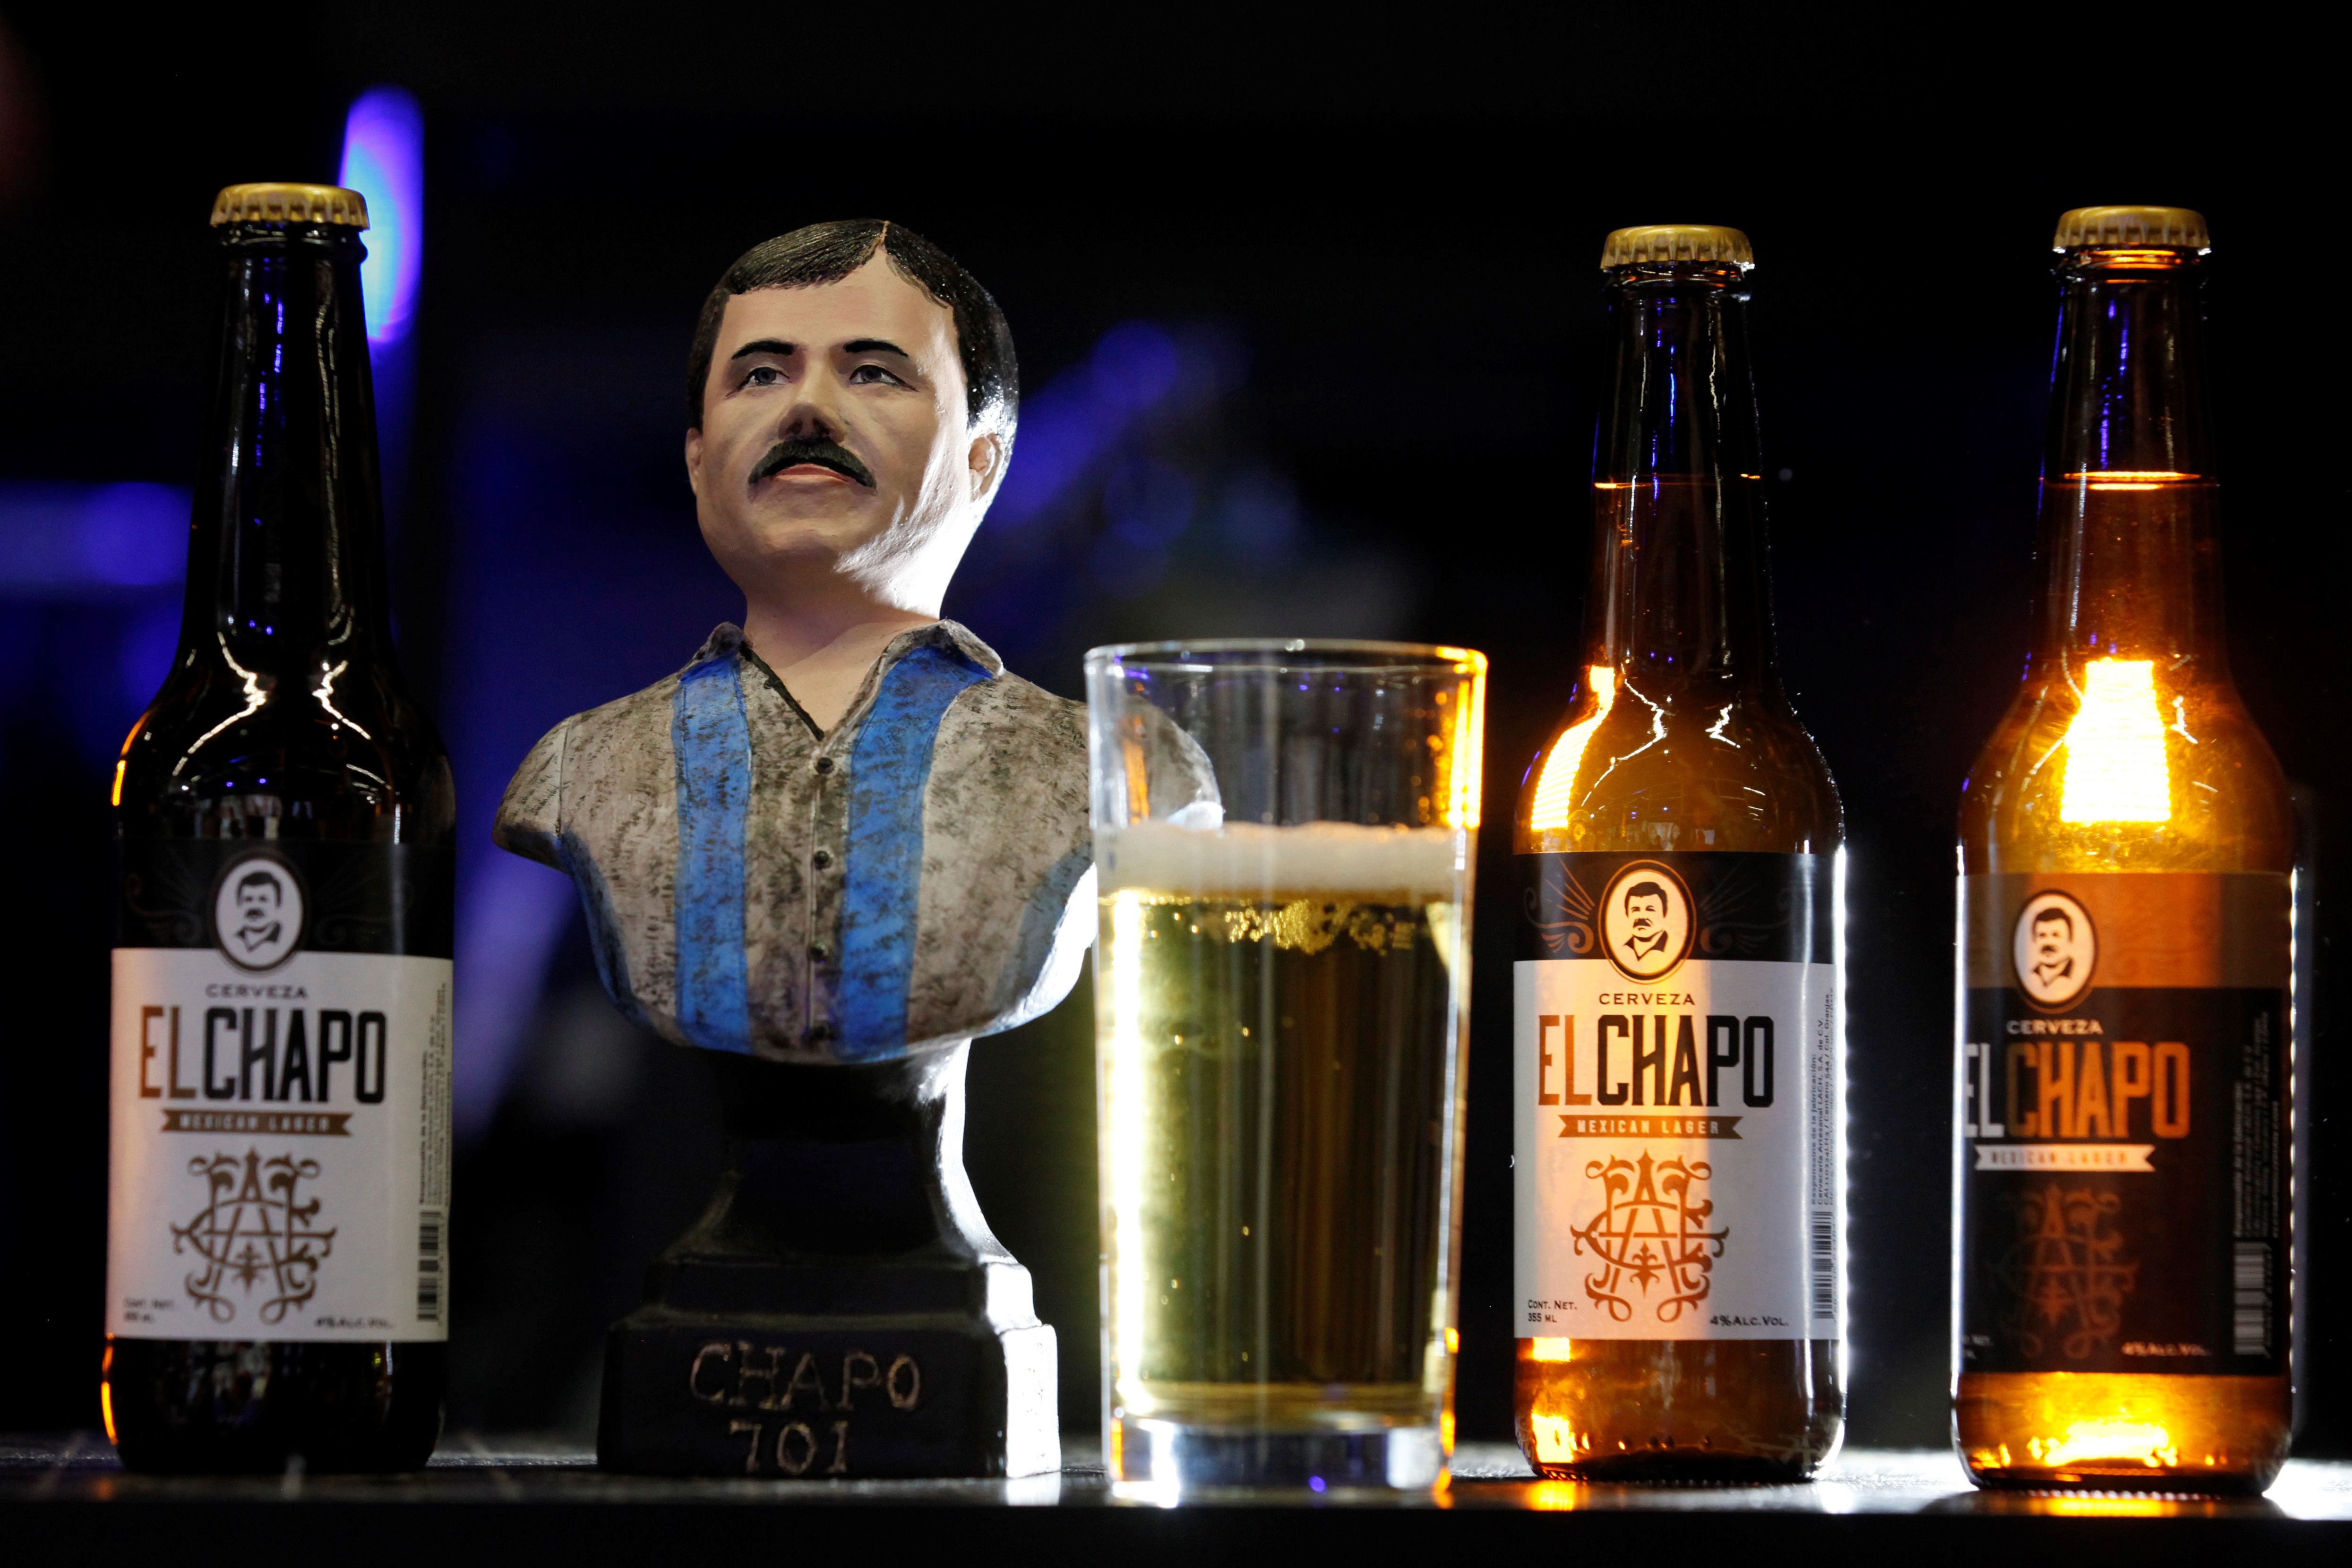 La marca originalmente de ropa dedicada al temido narcotraficante Joaquín "el Chapo" Guzmán Loera busca ahora adentrase en nuevos mercados con una cerveza artesanal. (Foto Prensa Libre: EFE)